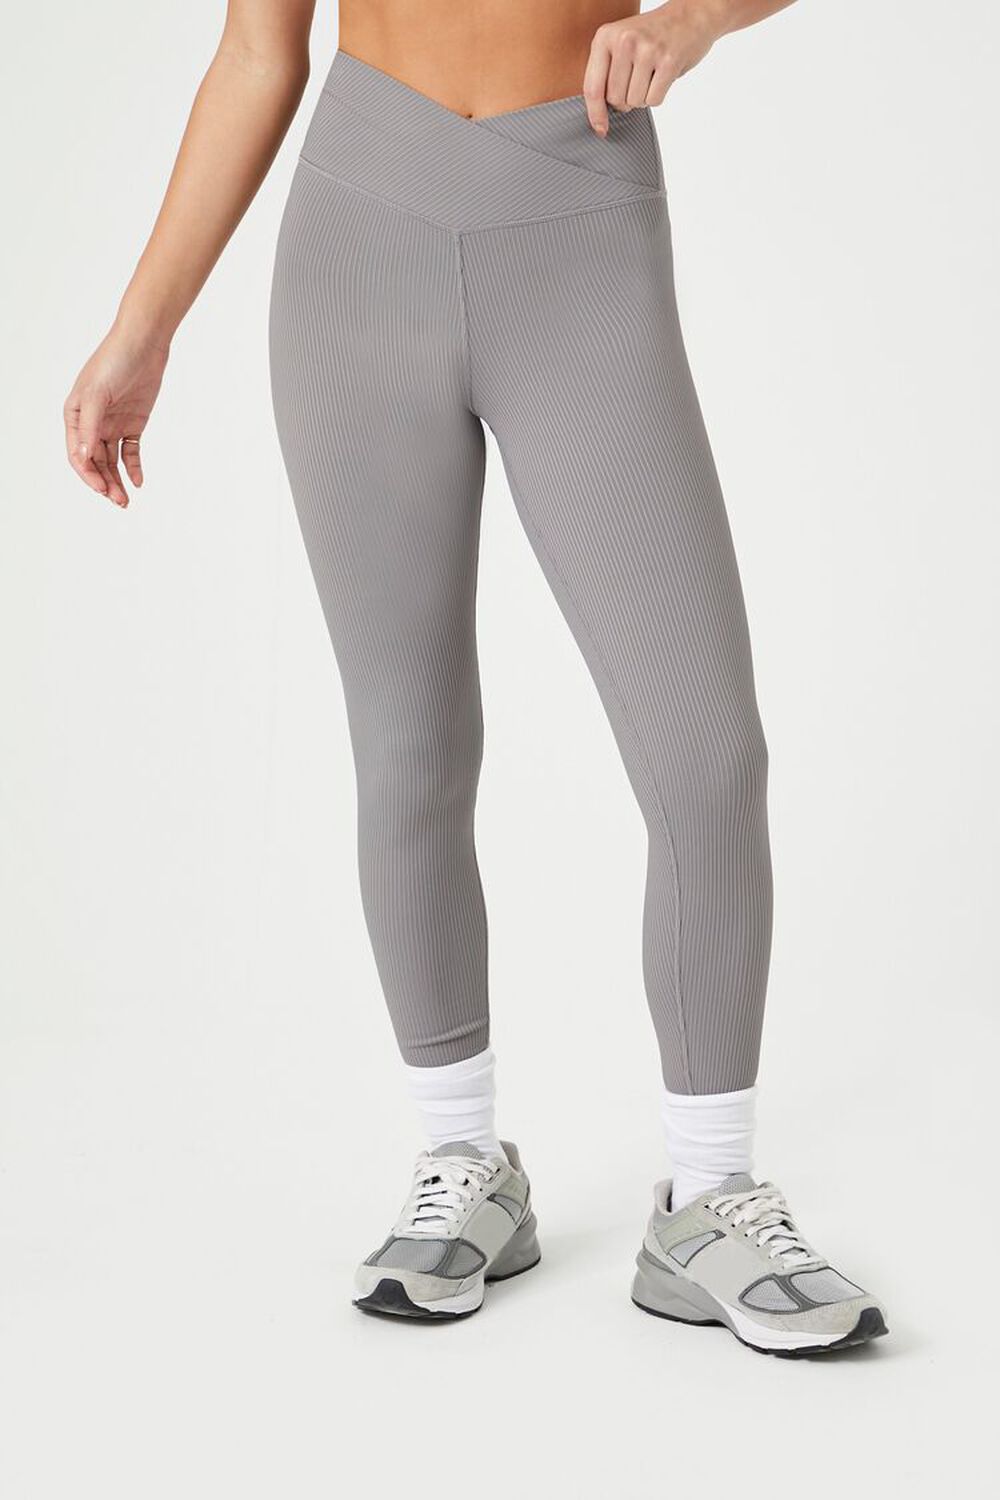 Lumana Leakproof Yoga Pant Leggings, 22 Inseam, Gray, Small, Single Pair 